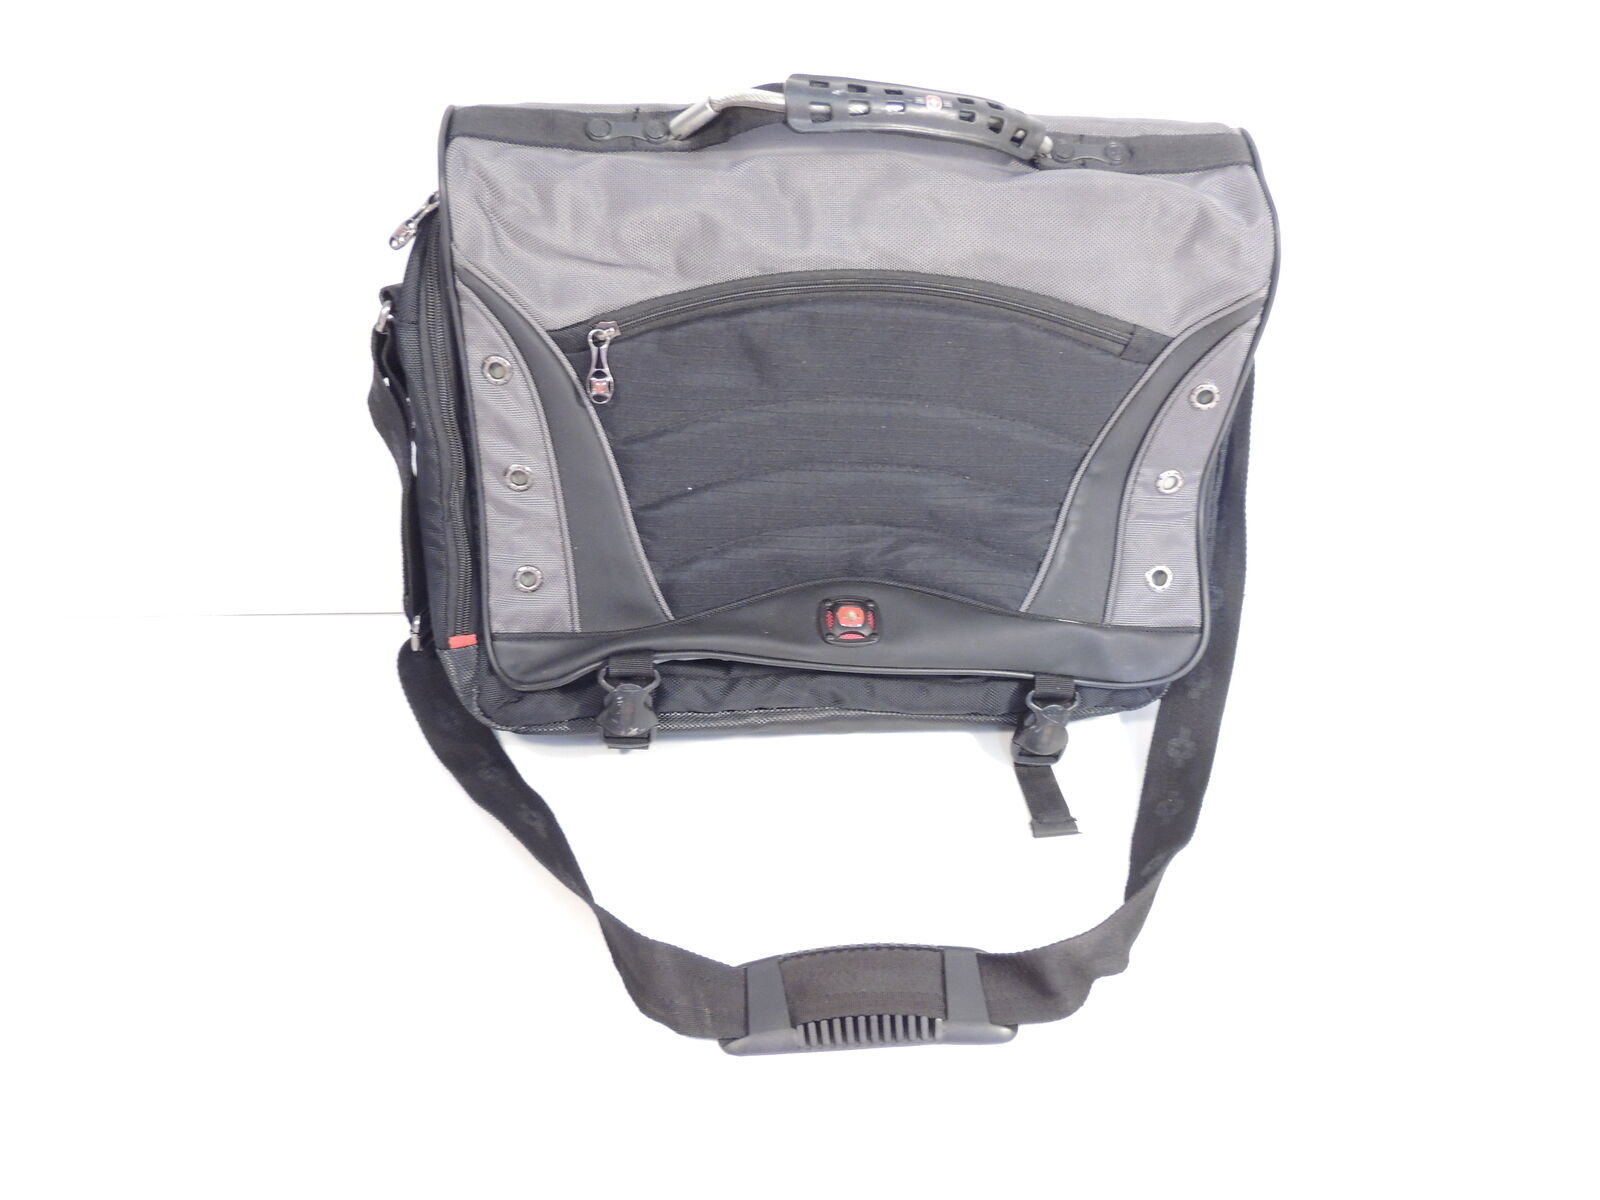 Wenger Swiss Gear Laptop Computer Briefcase Black Travel Shoulder Bag